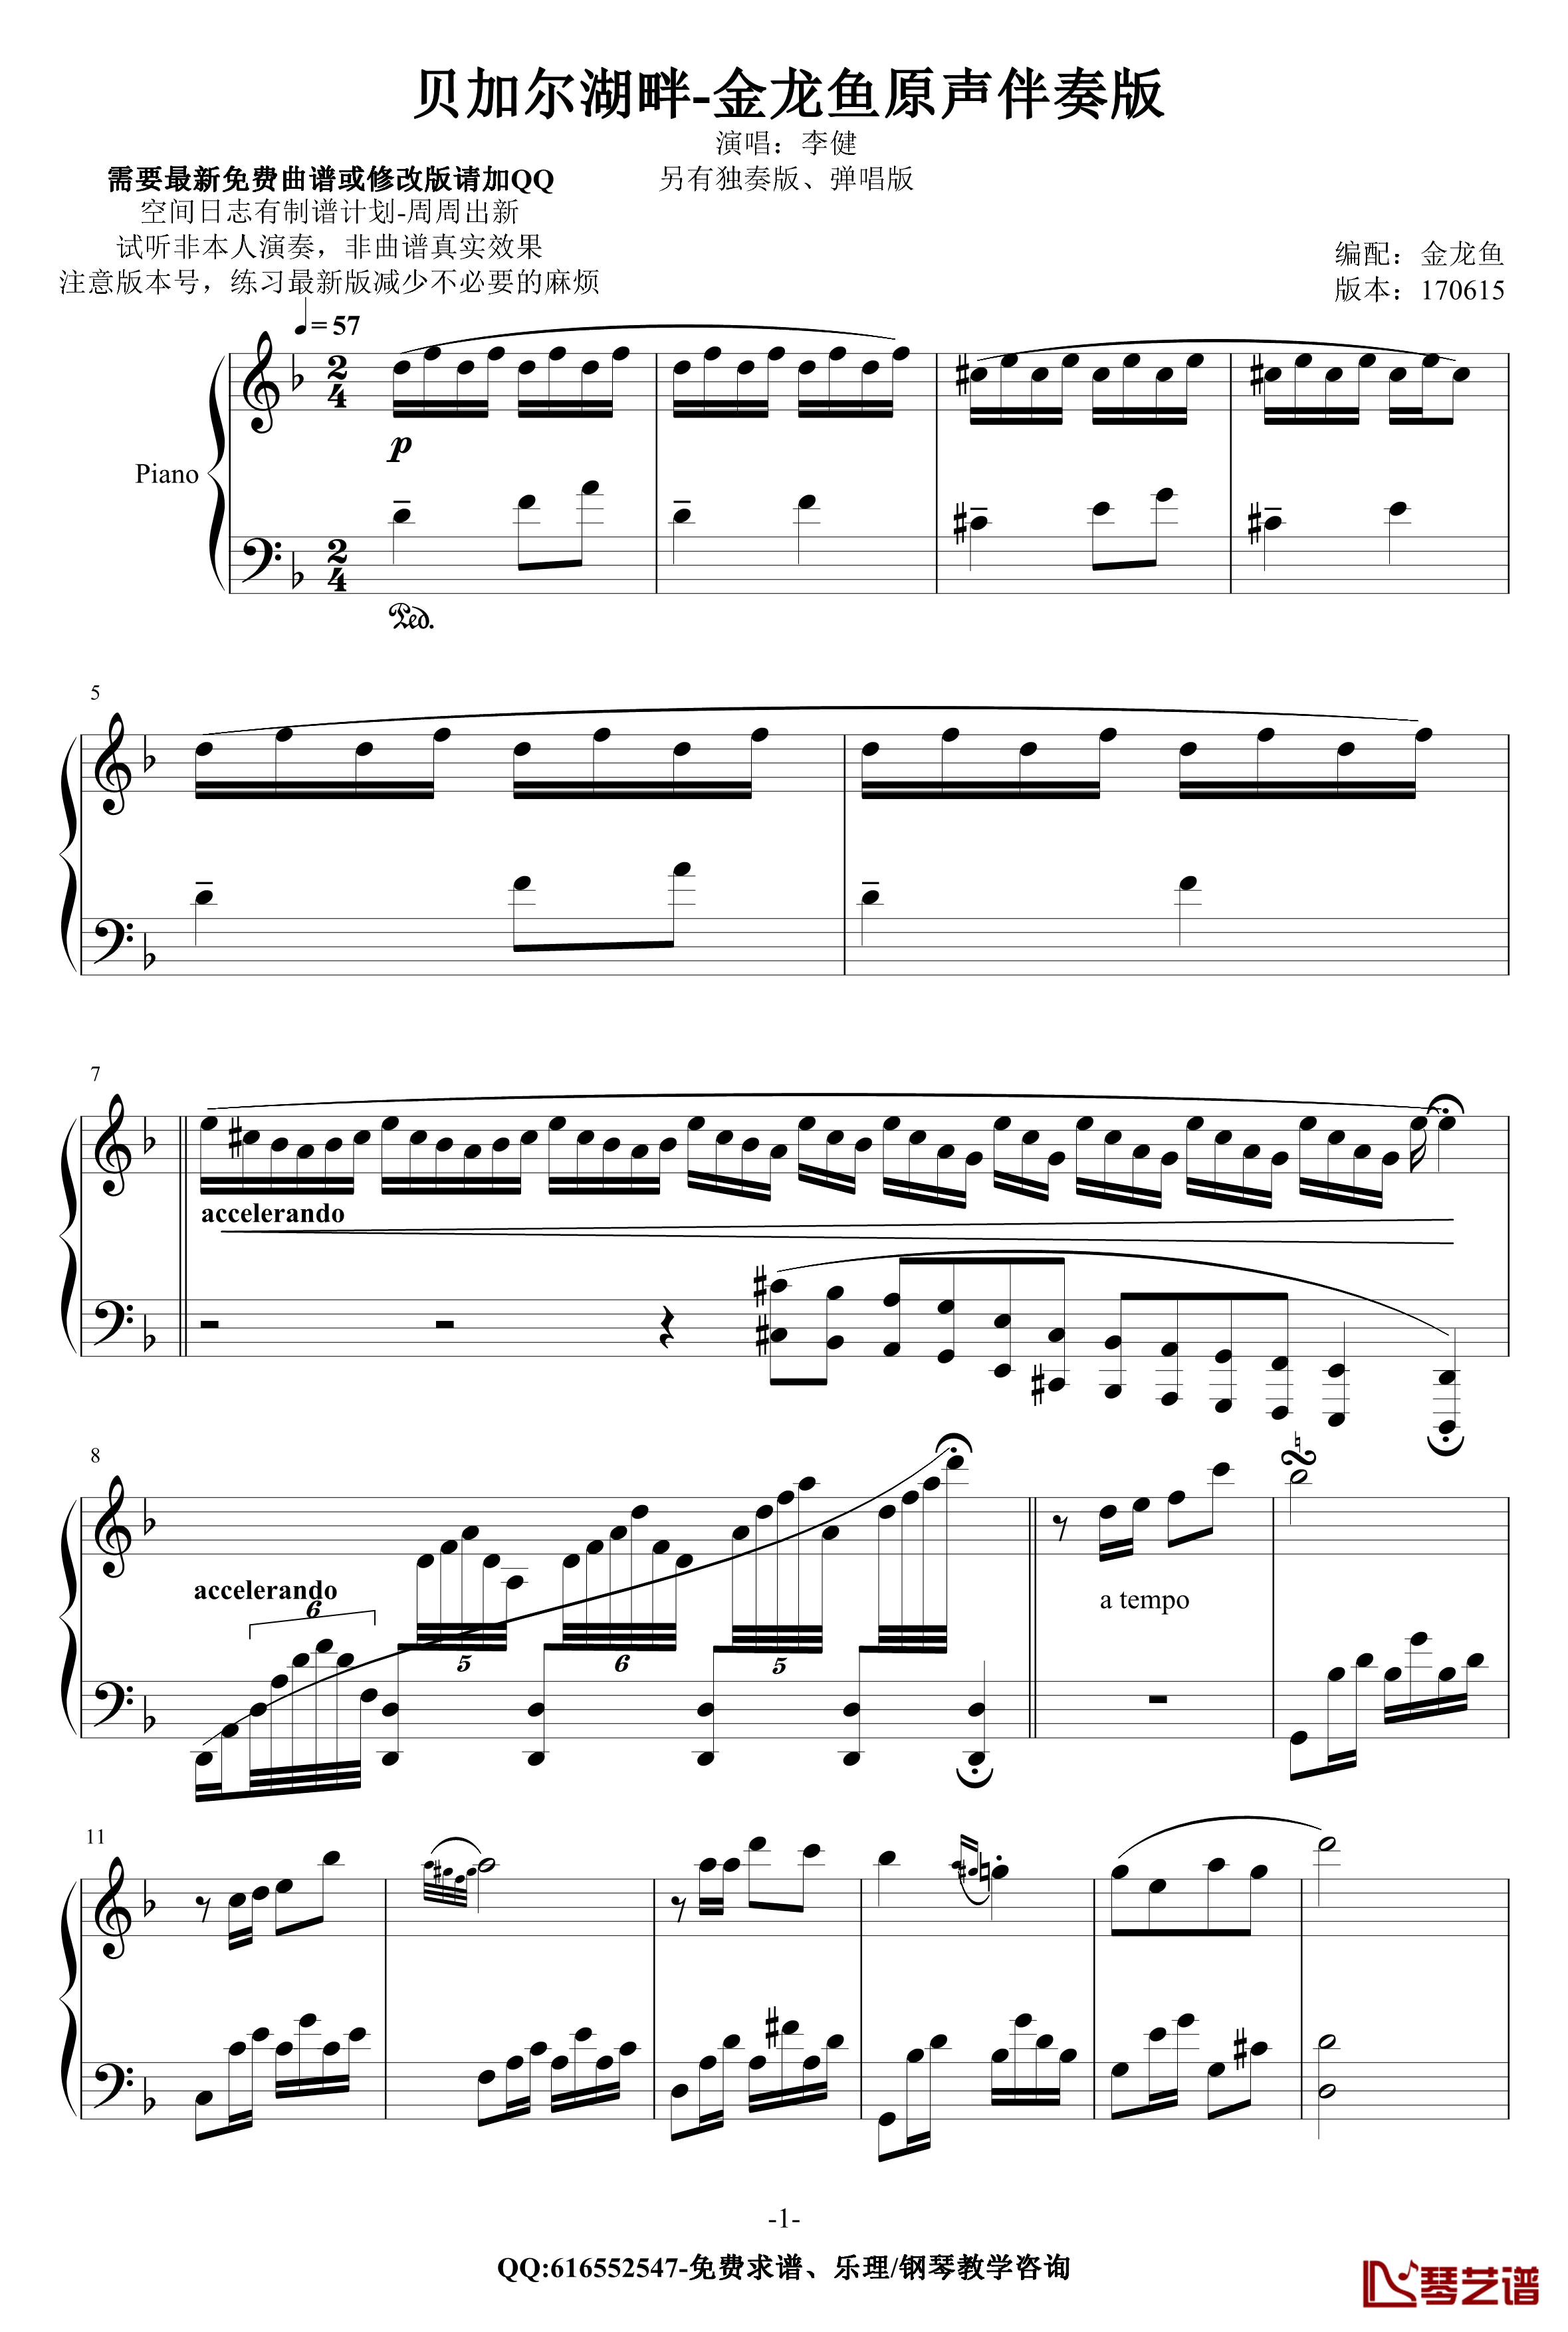 贝加尔湖畔钢琴谱-金龙鱼原声伴奏版170616-李健1